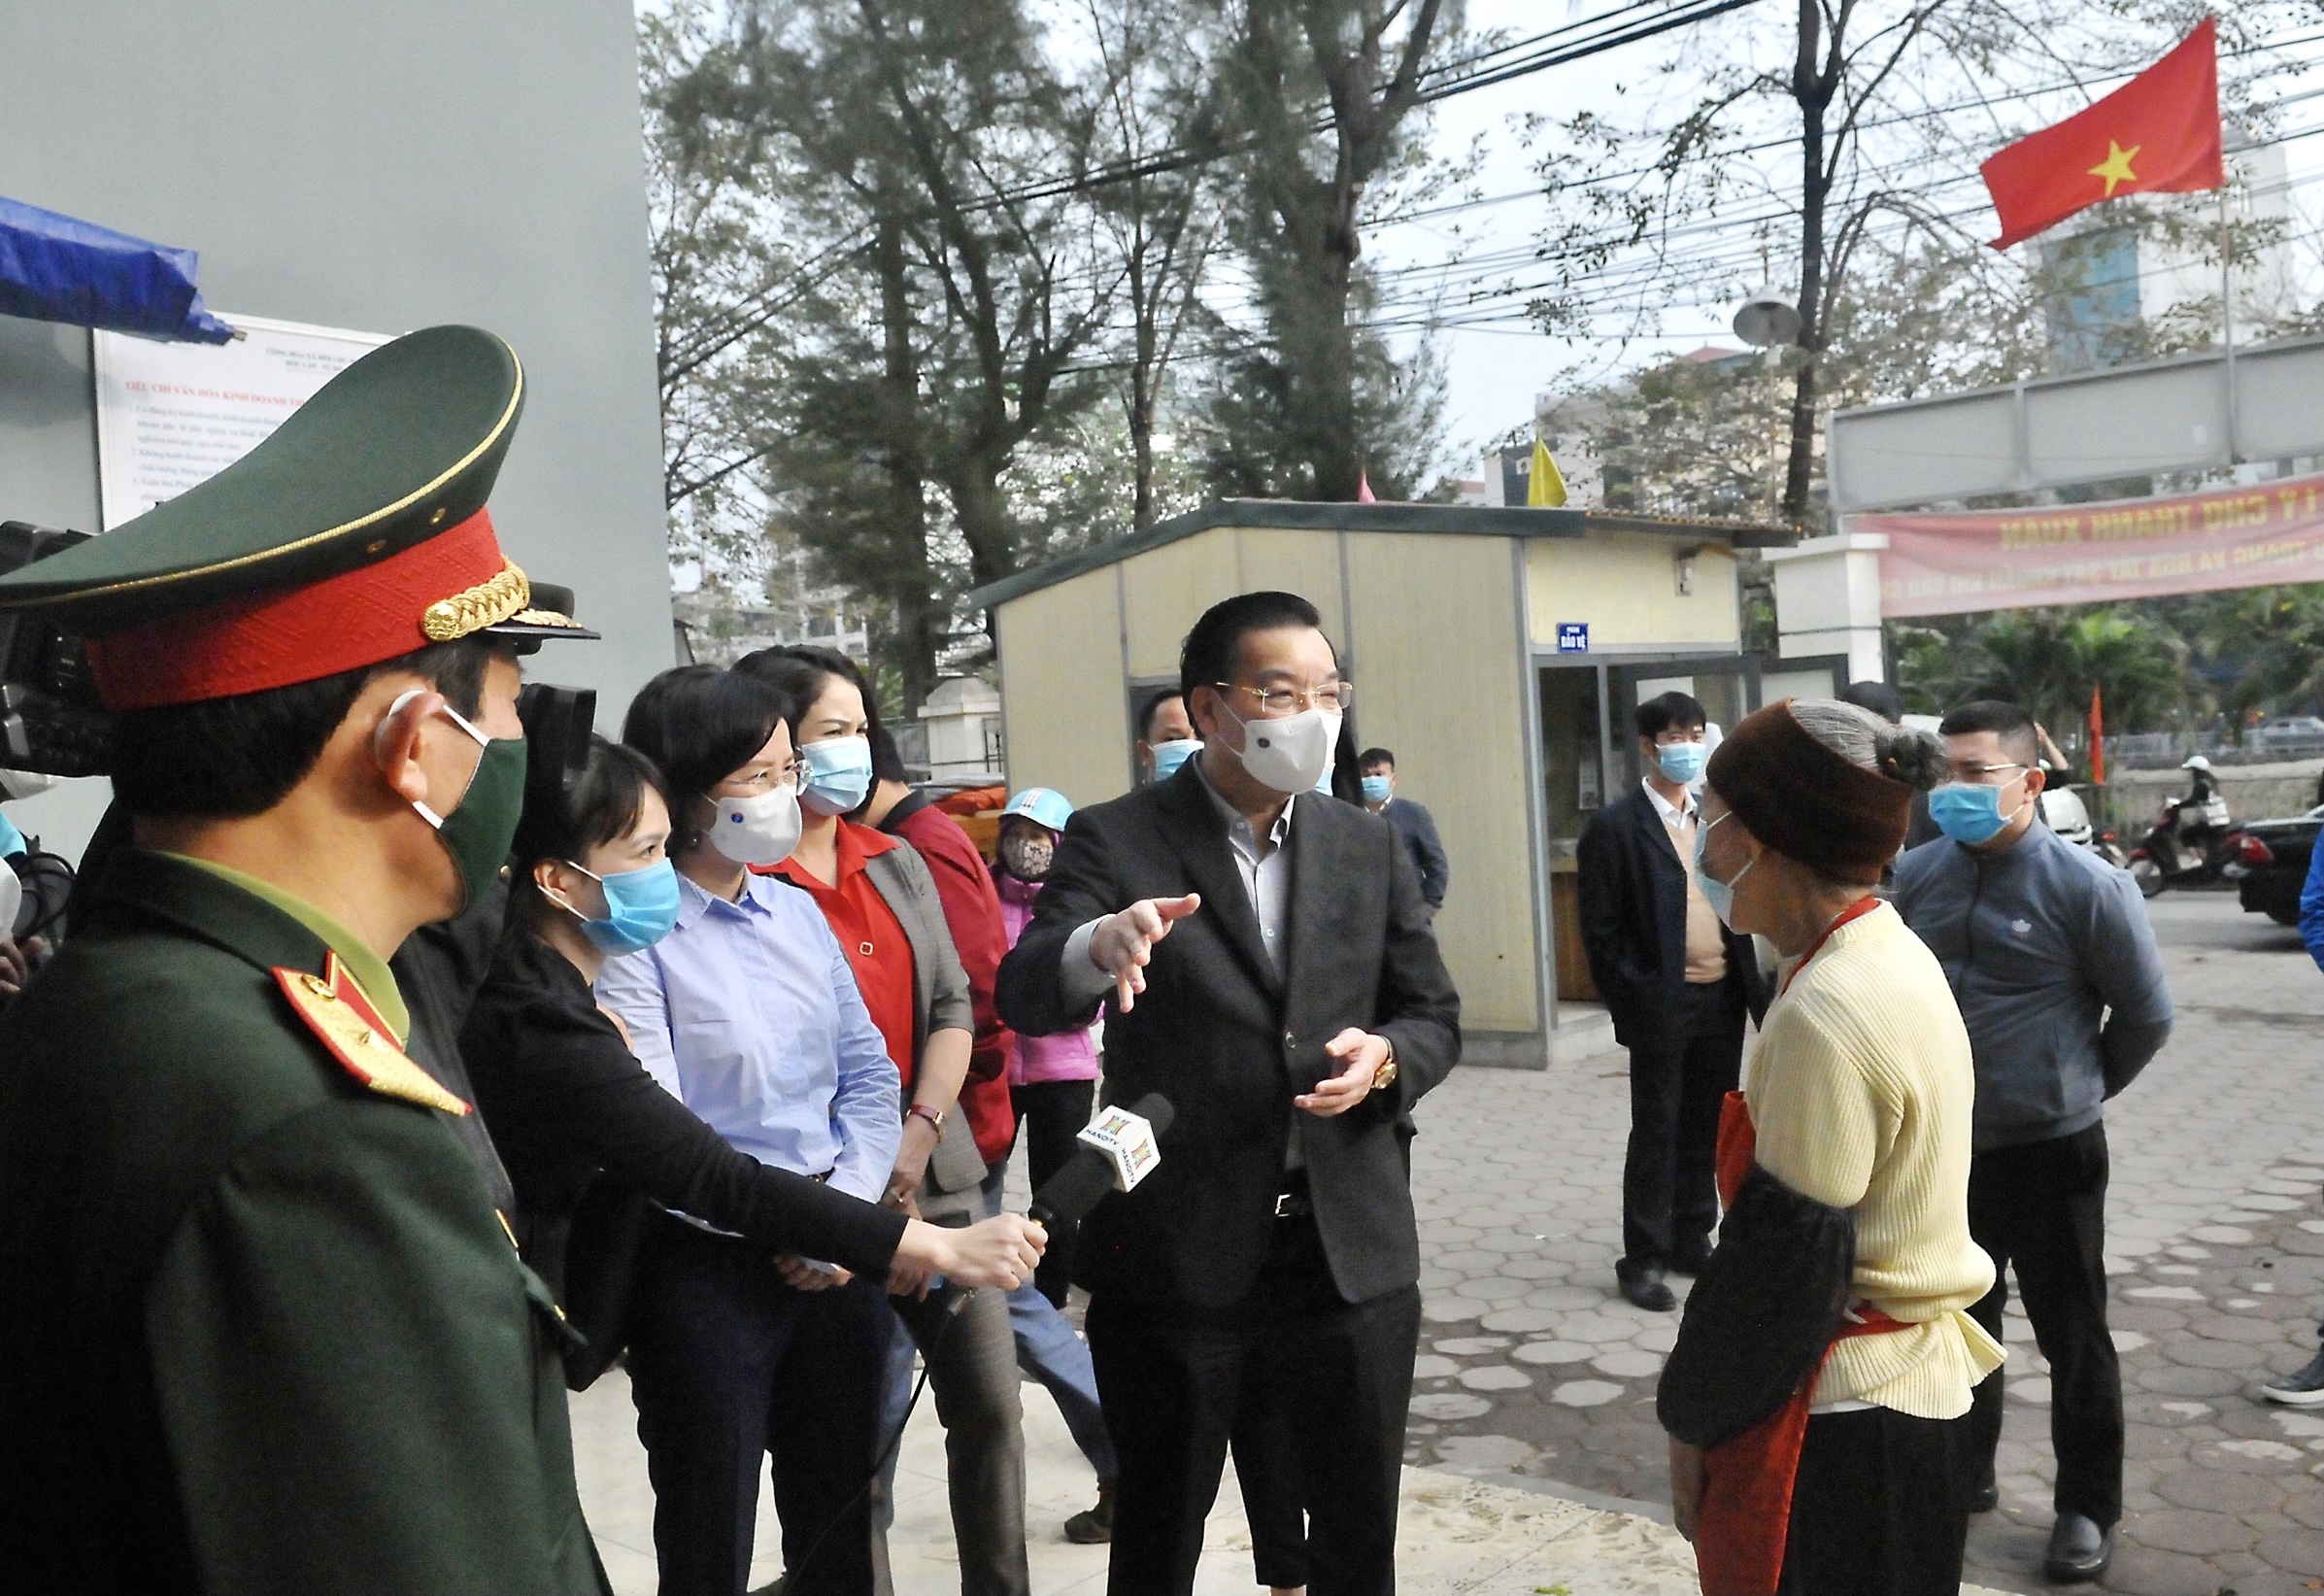 Chủ tịch Uỷ ban nhân dân thành phố Hà Nội kiểm tra công tác phòng chống dịch Covid-19